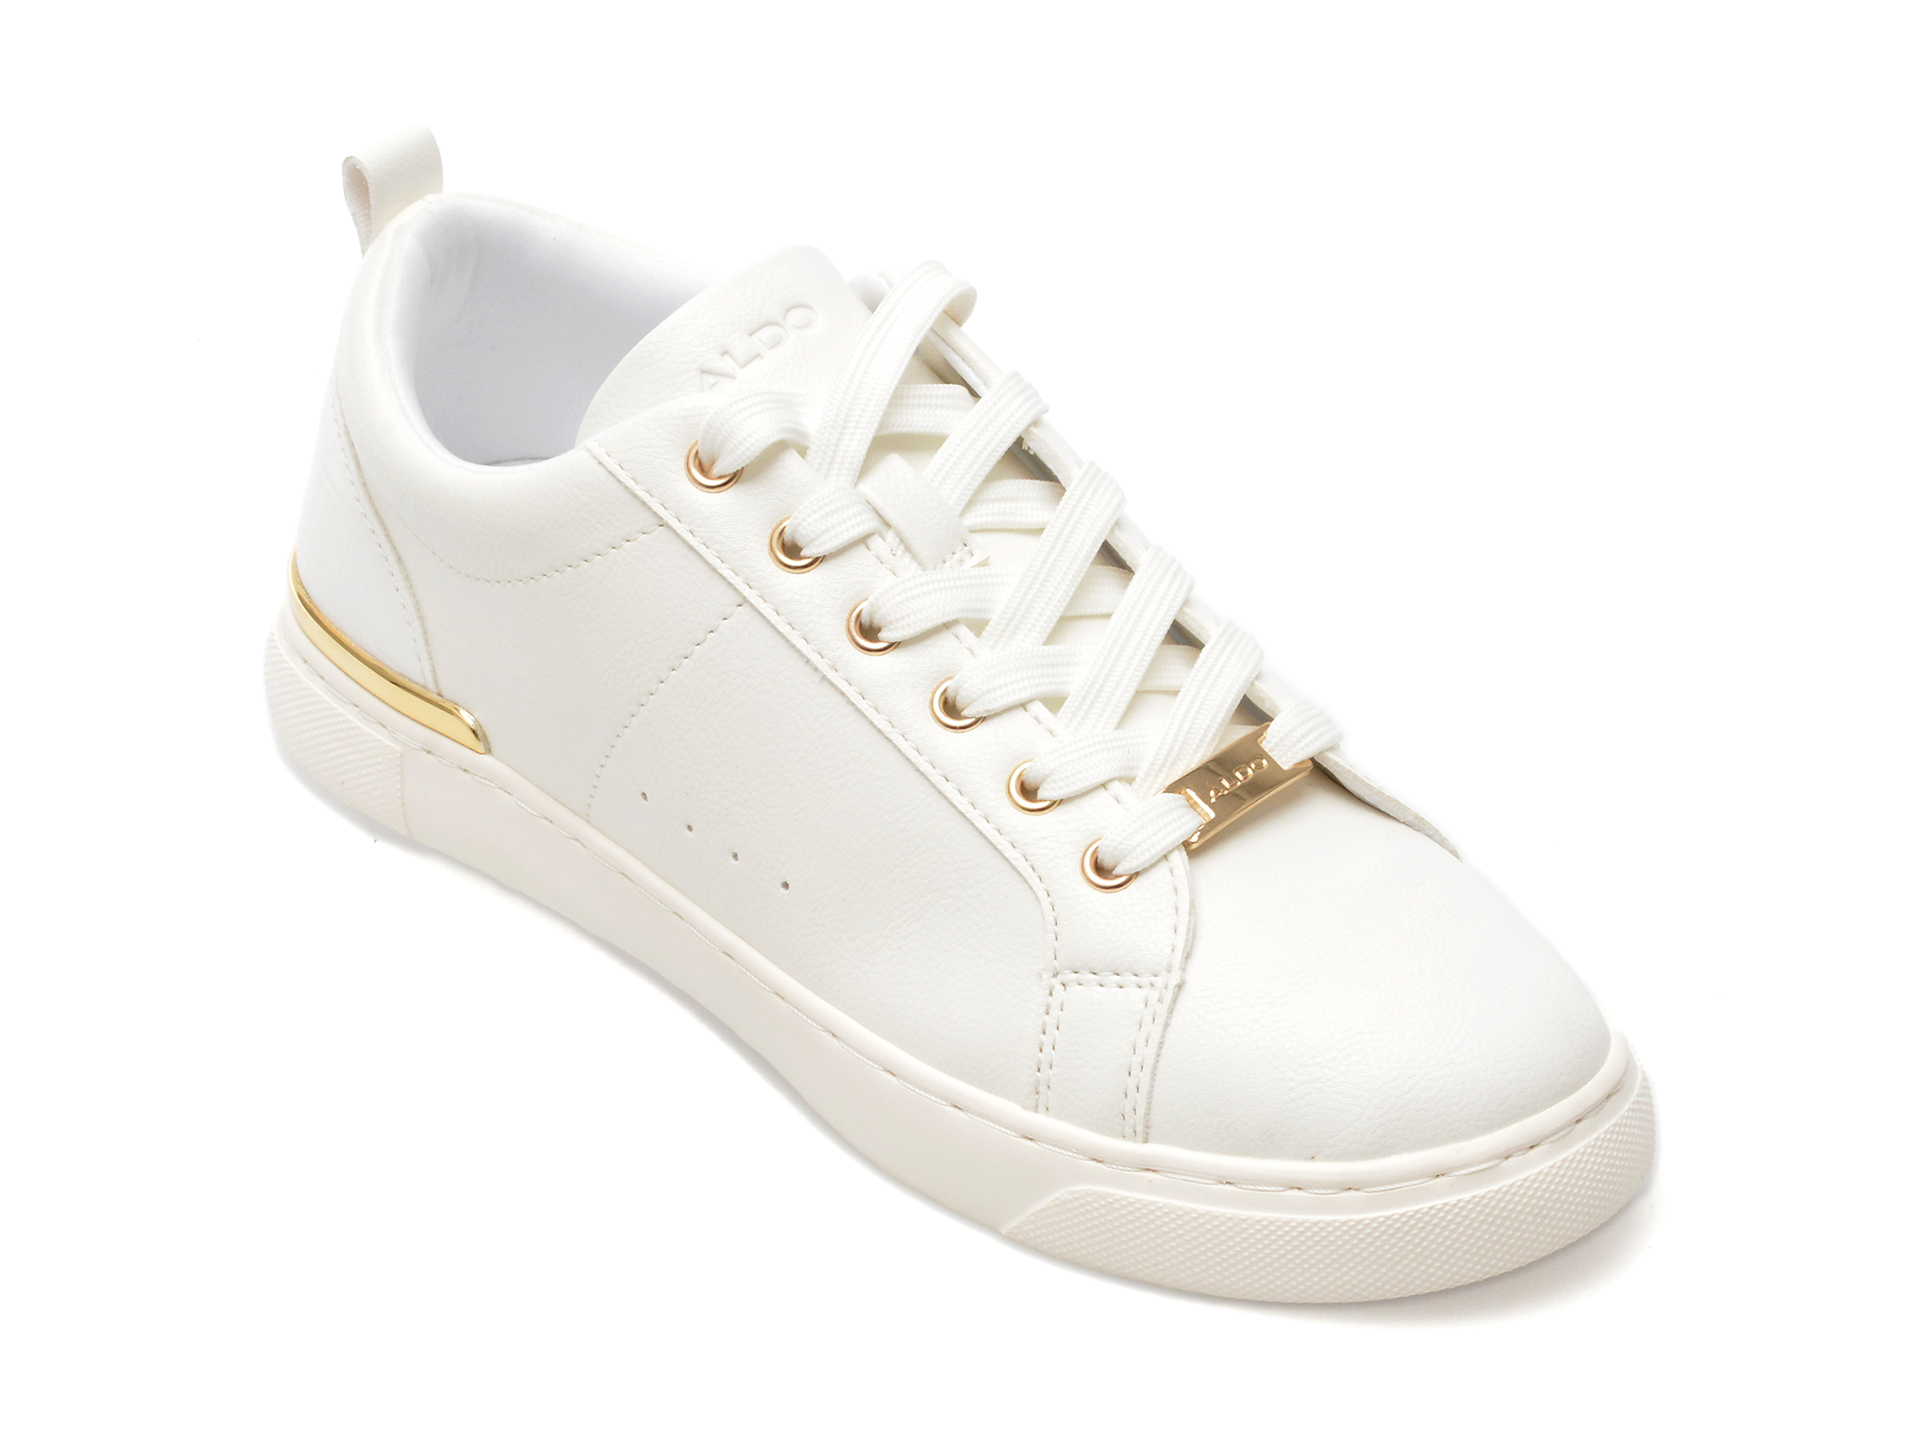 Pantofi ALDO albi, DILATHIELLE100, din piele ecologica Aldo